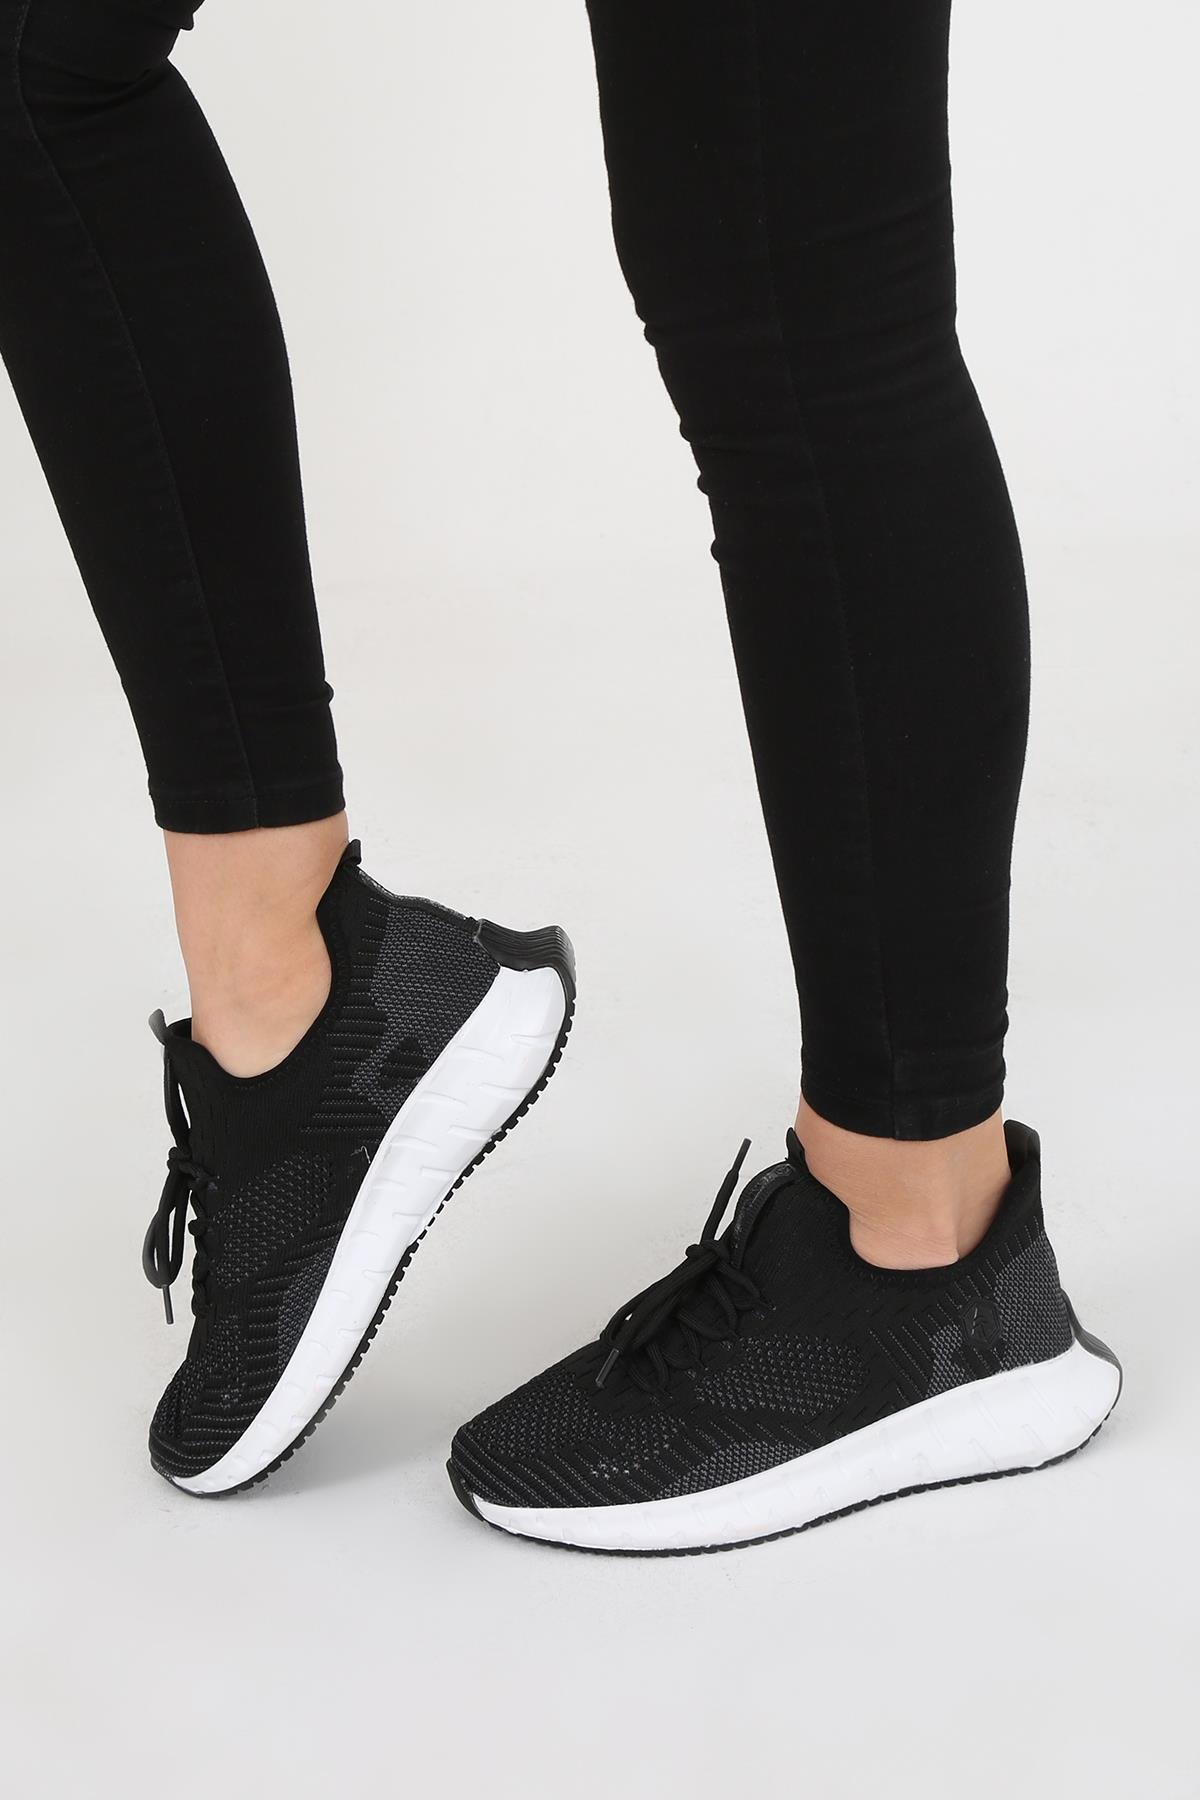 Flovia Siyah File Kumaş Bağcık Detaylı Çelik Örme Triko Kadın Spor Ayakkabı